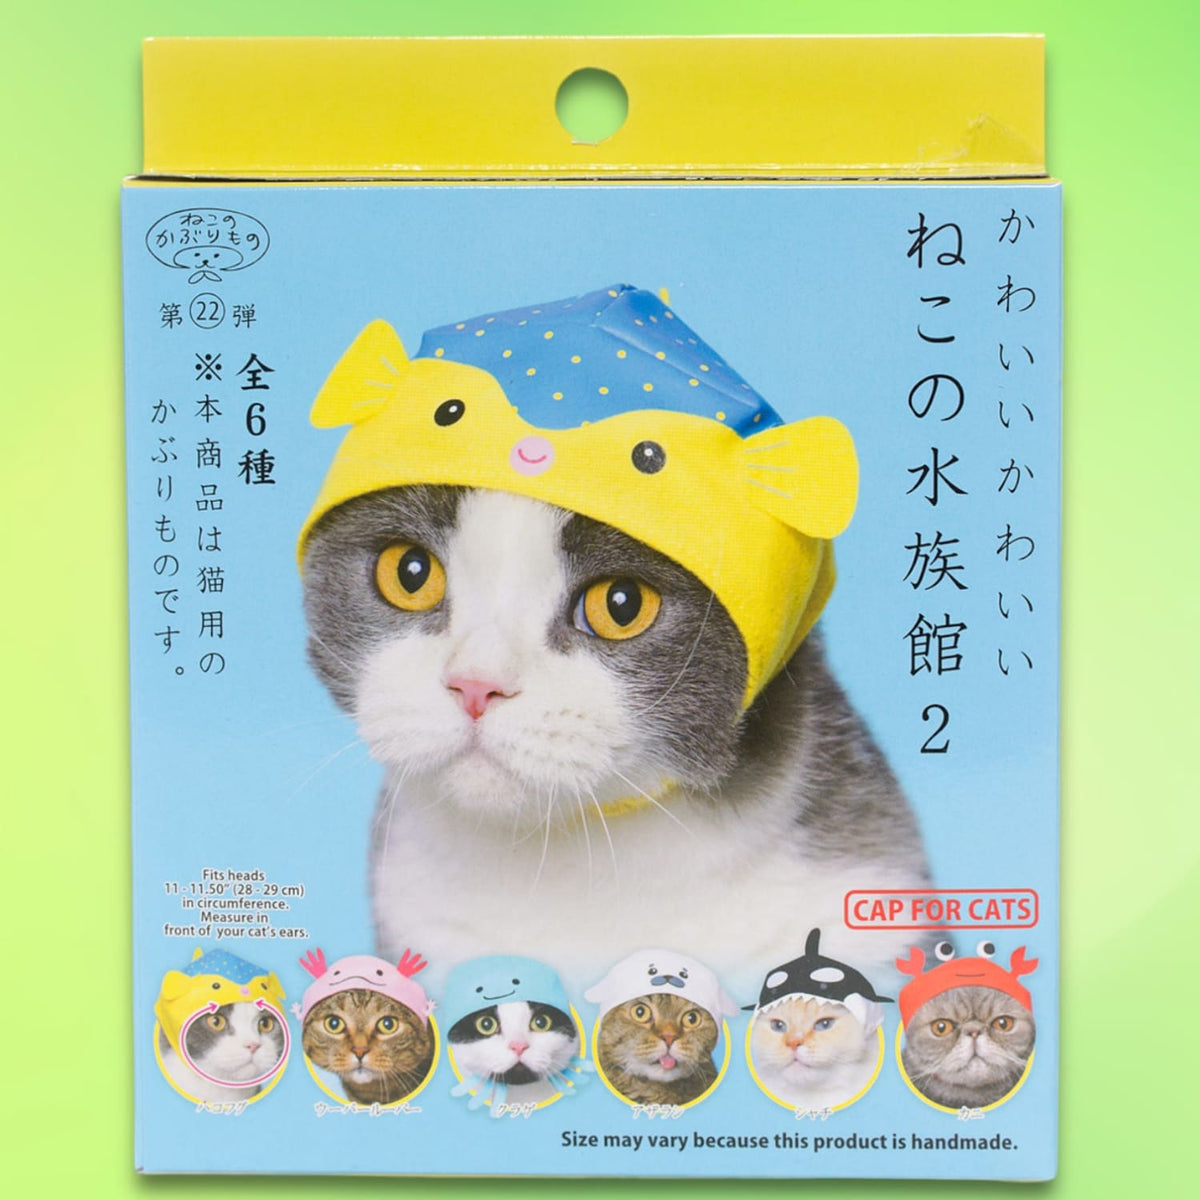 Cat Cap Aquarium Hat - Blind Box Blind Box - Collectible -